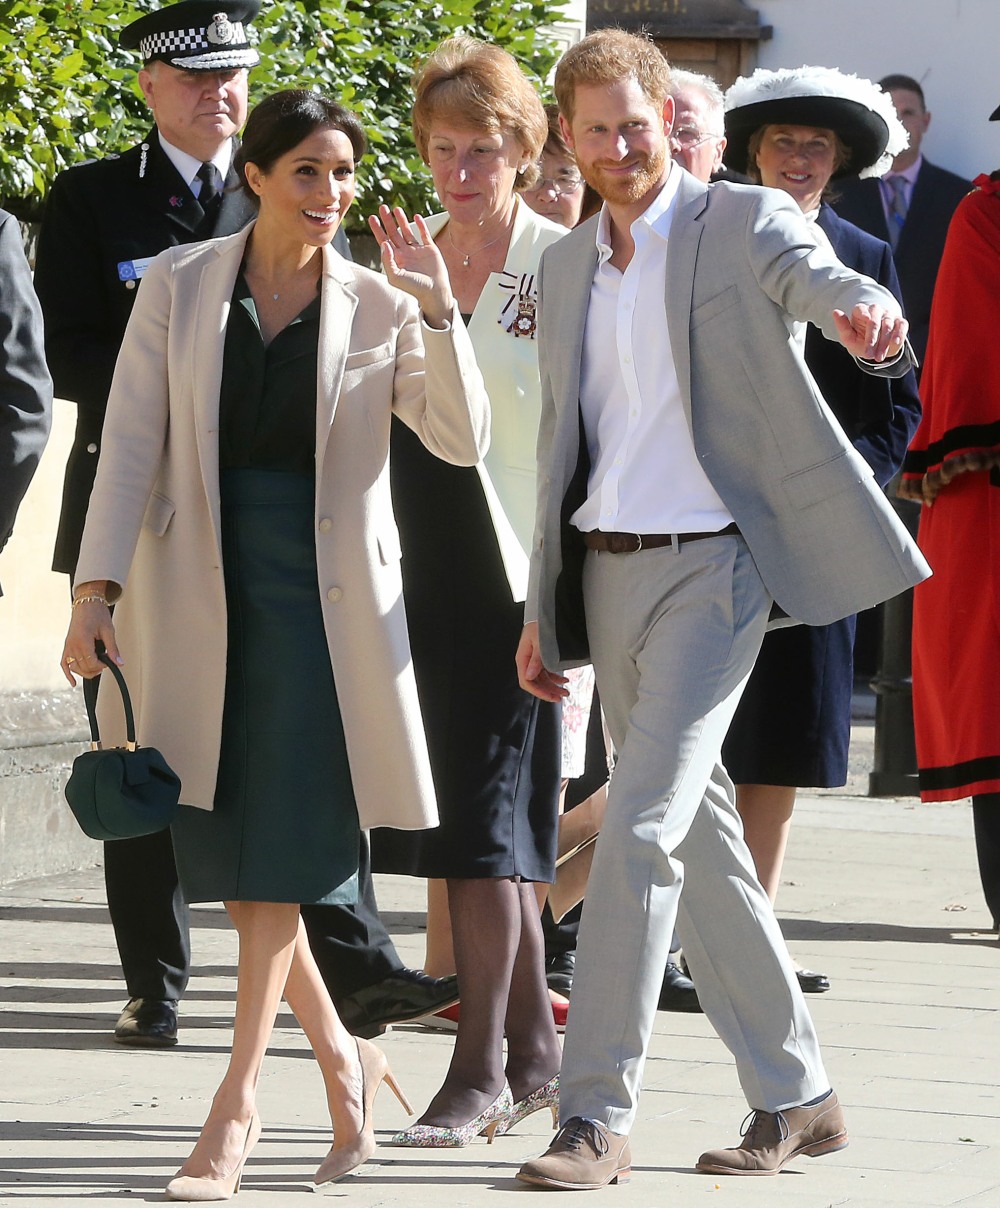 Герцогиня Меган надела костюм Hugo Boss & Armani на знаменательный день событий в Сассексе